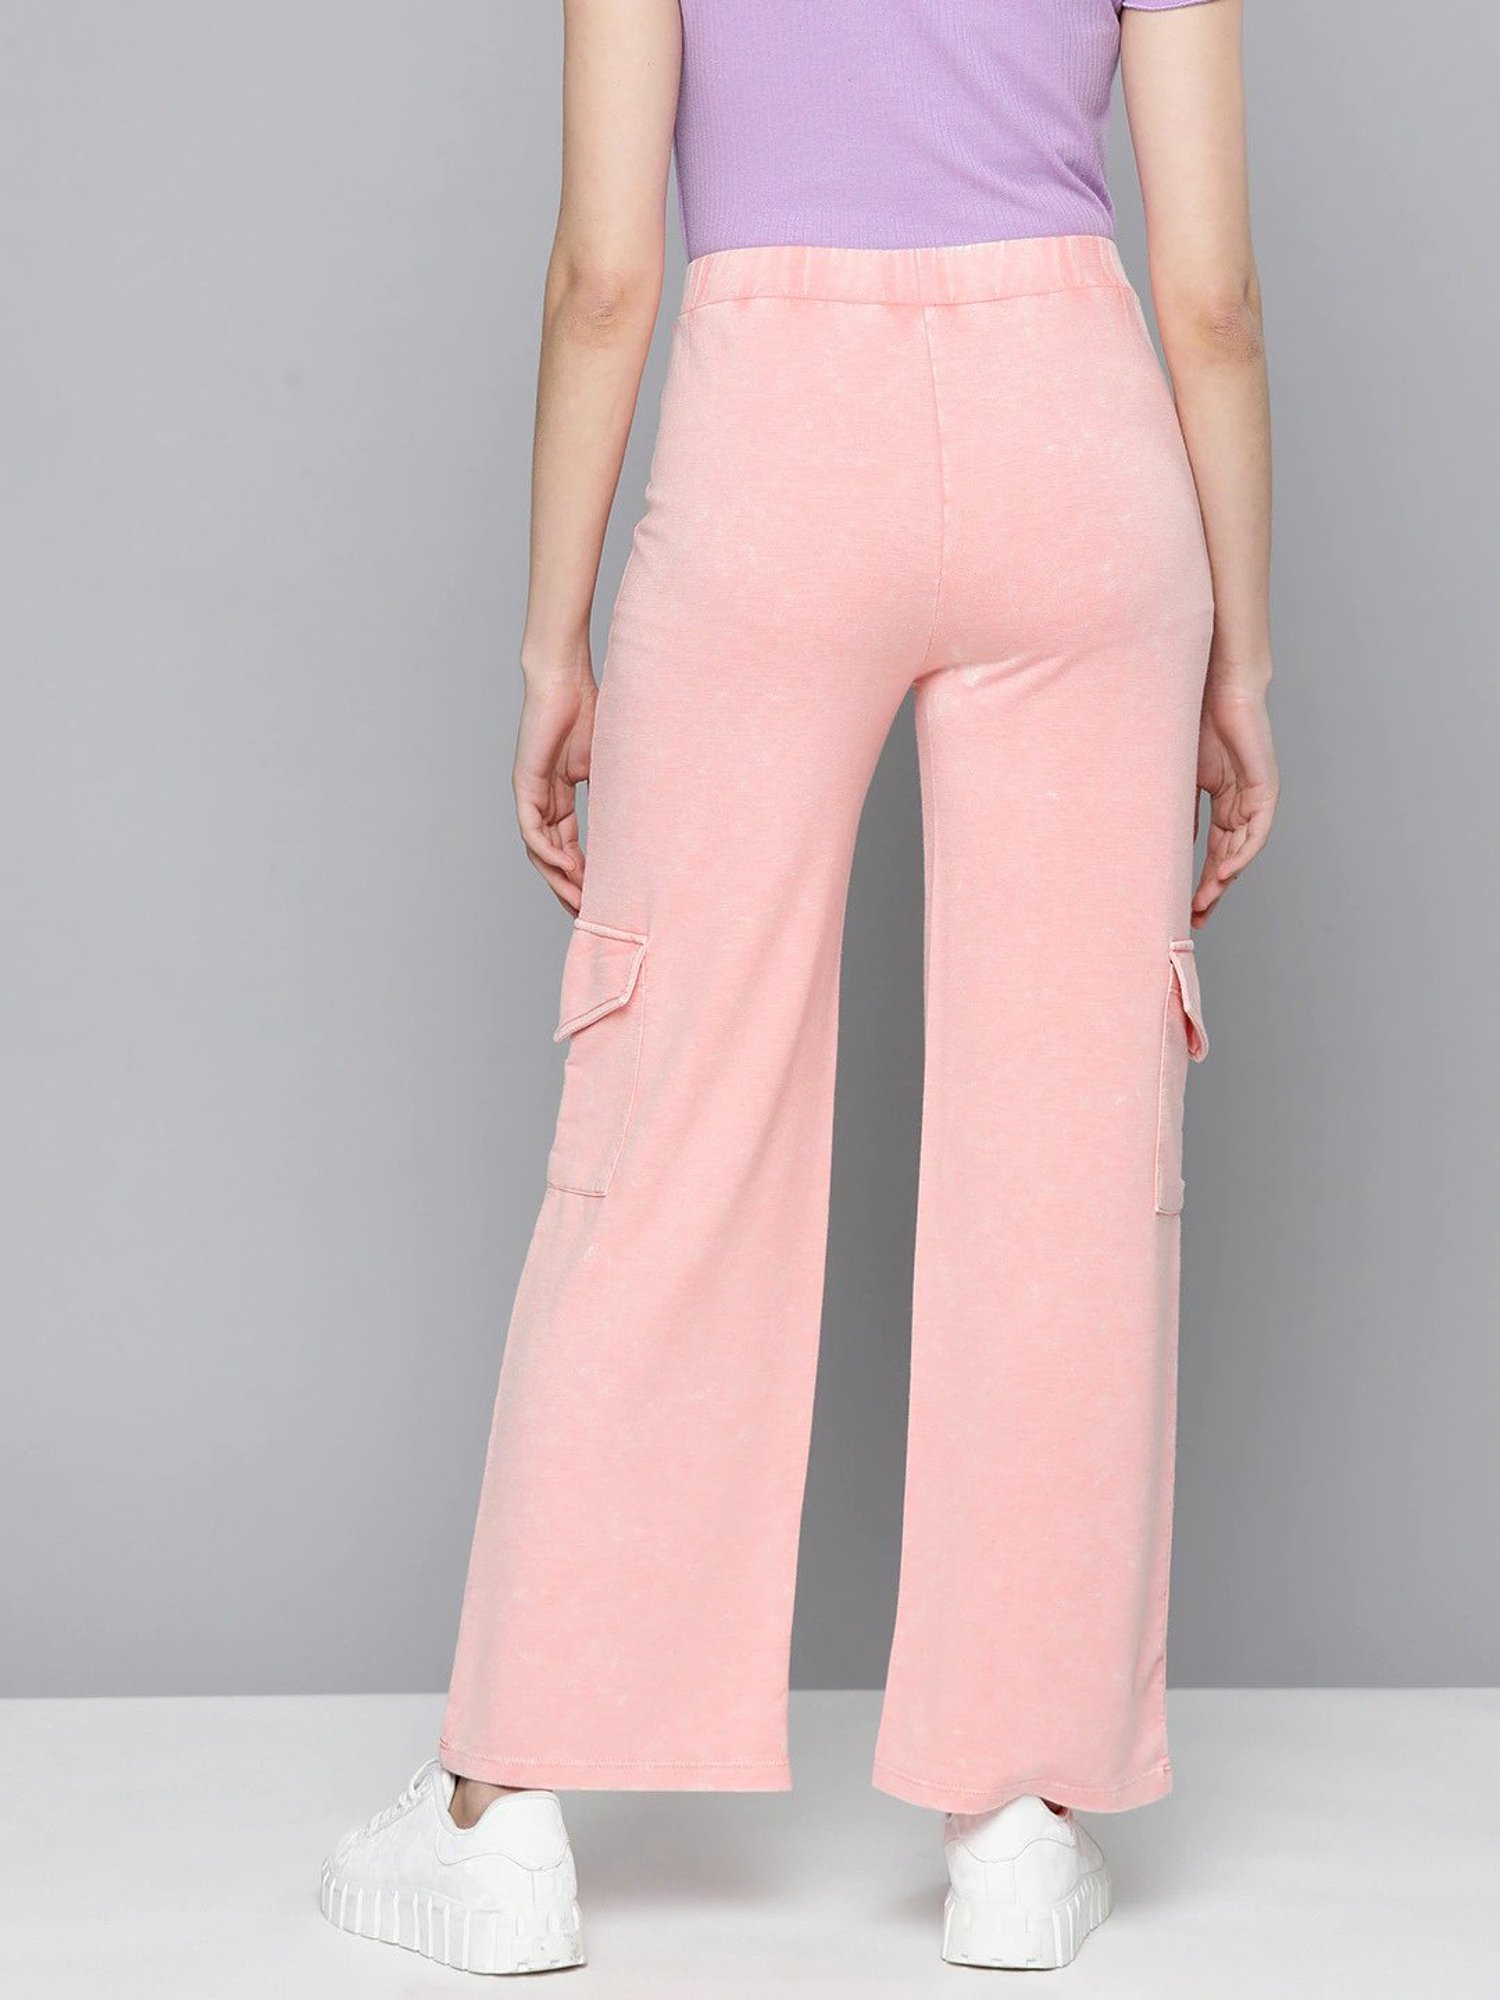 Buy Dusty Pink Trousers  Pants for Women by Fyre Rose Online  Ajiocom